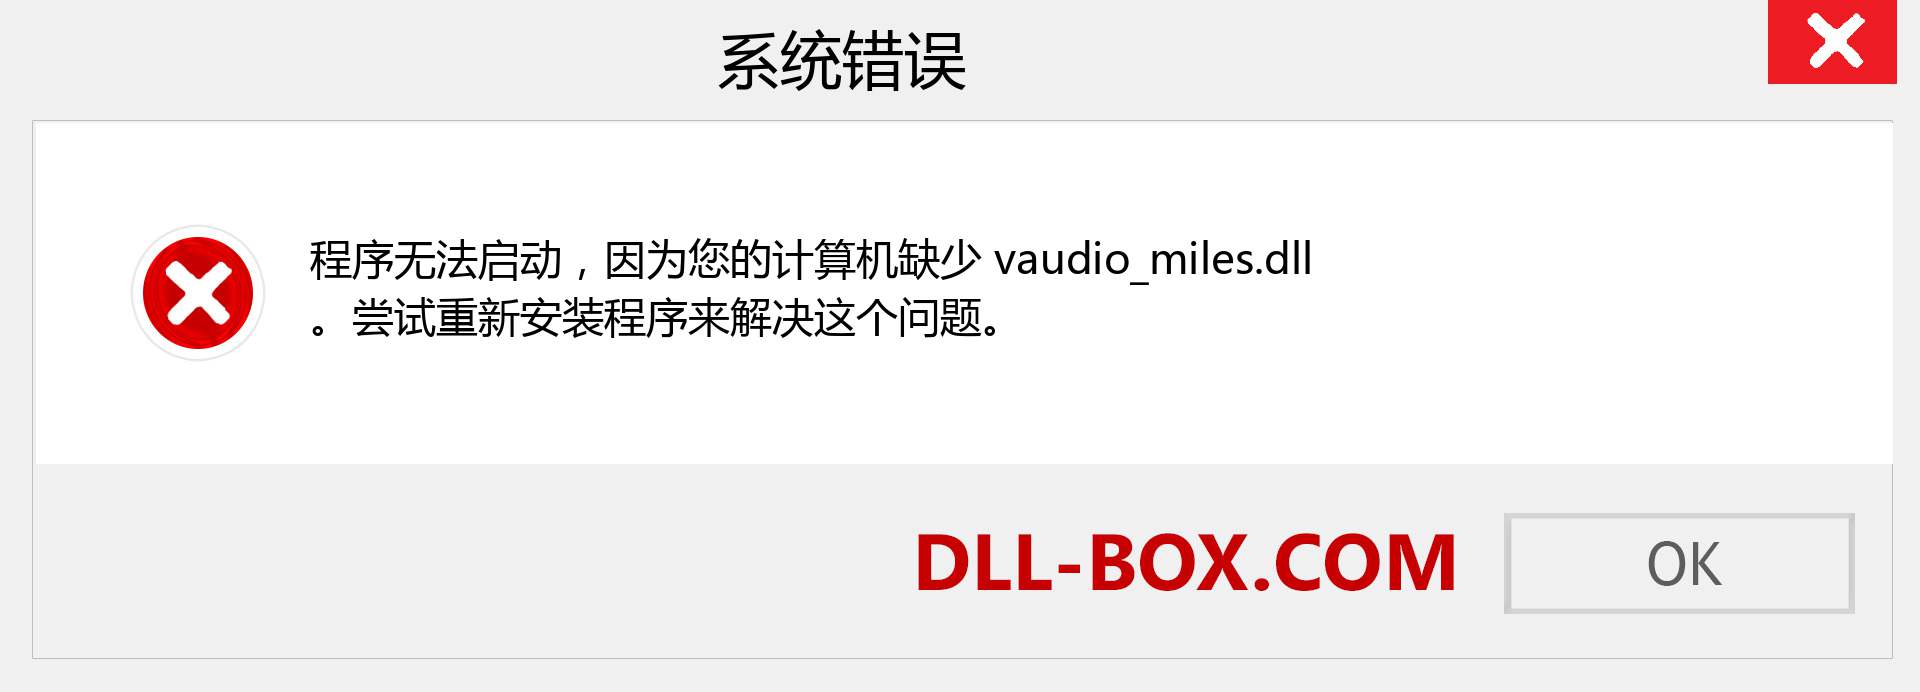 vaudio_miles.dll 文件丢失？。 适用于 Windows 7、8、10 的下载 - 修复 Windows、照片、图像上的 vaudio_miles dll 丢失错误